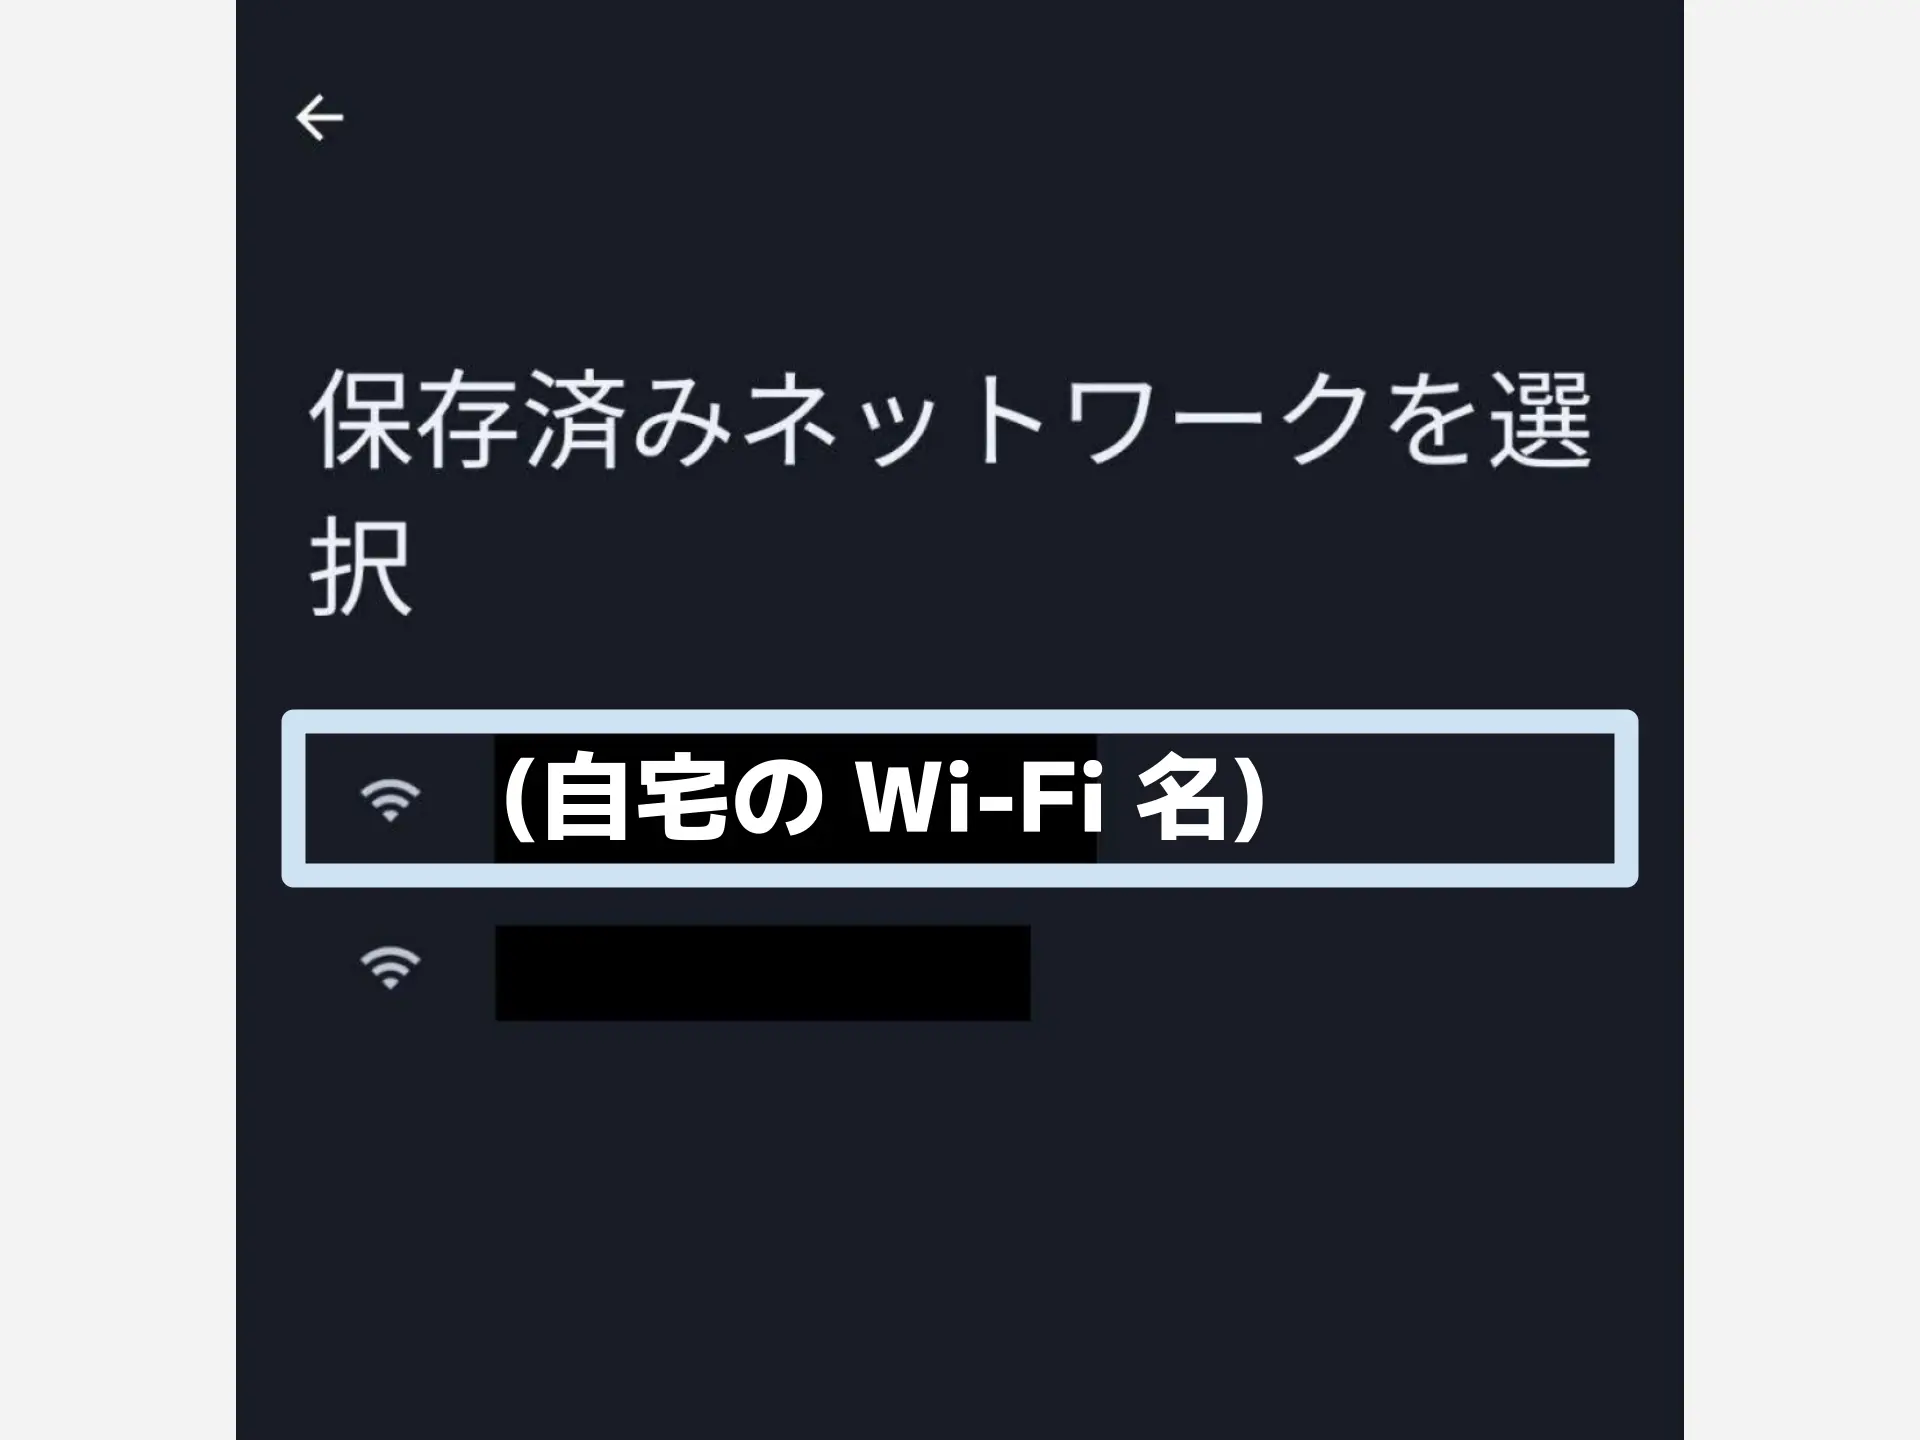 自宅の Wi-Fi を選んでタップする。